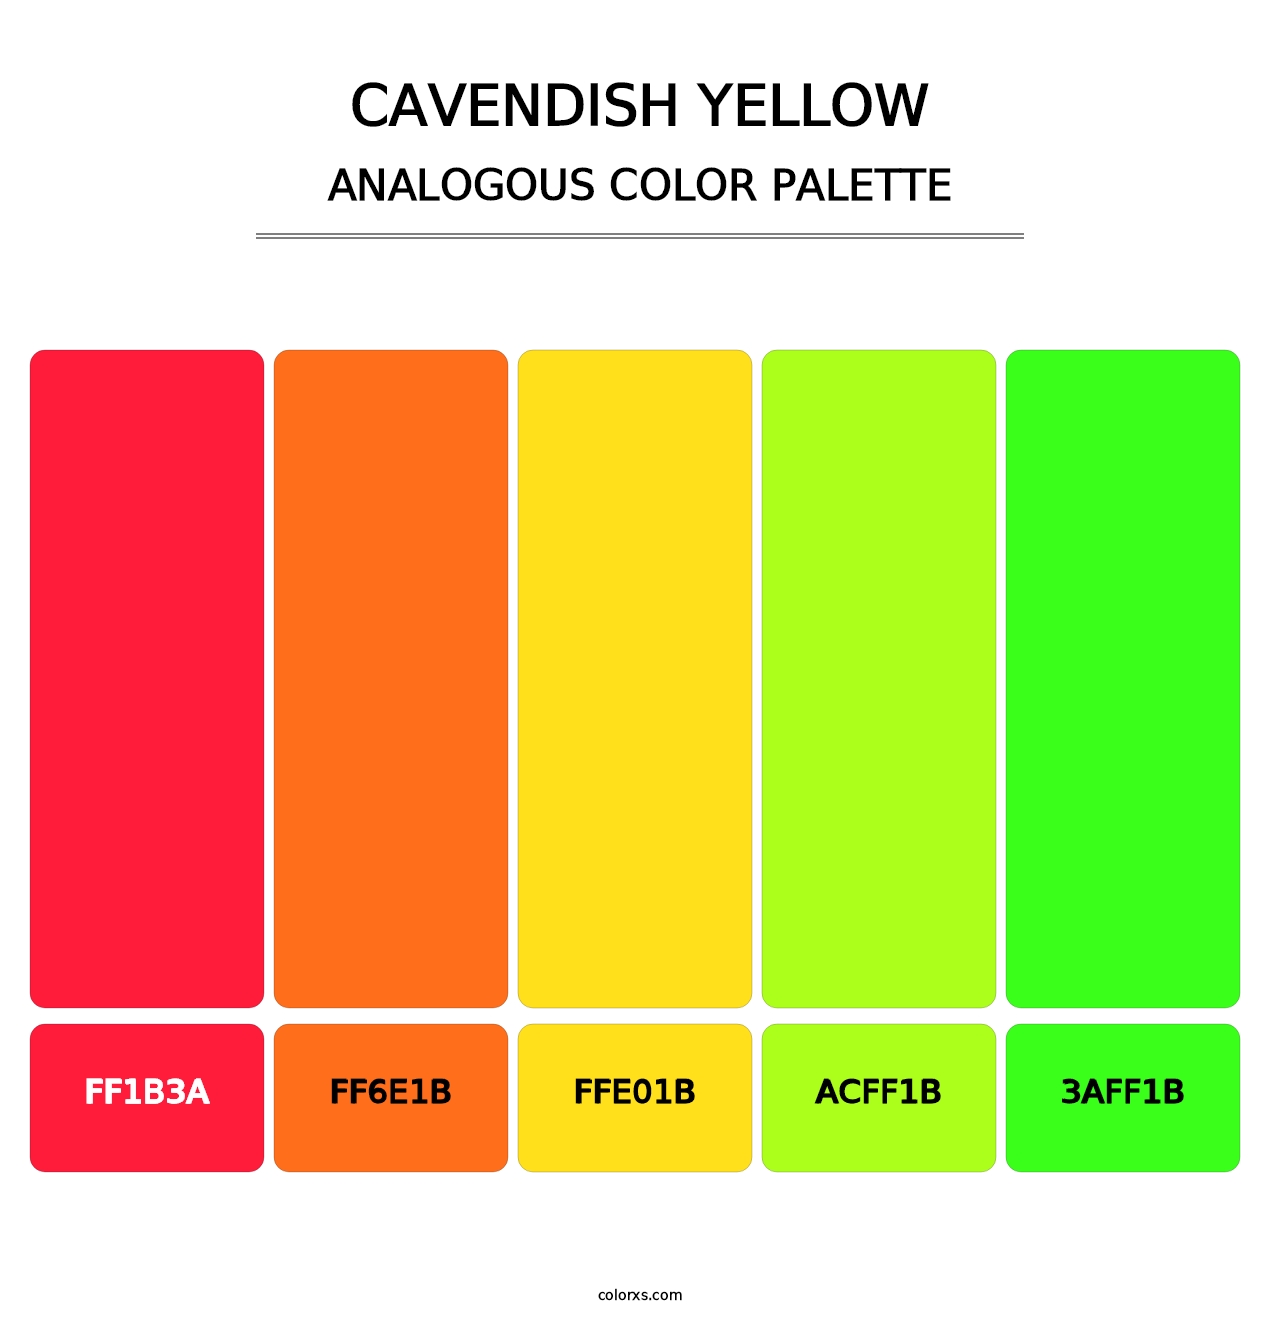 Cavendish Yellow - Analogous Color Palette